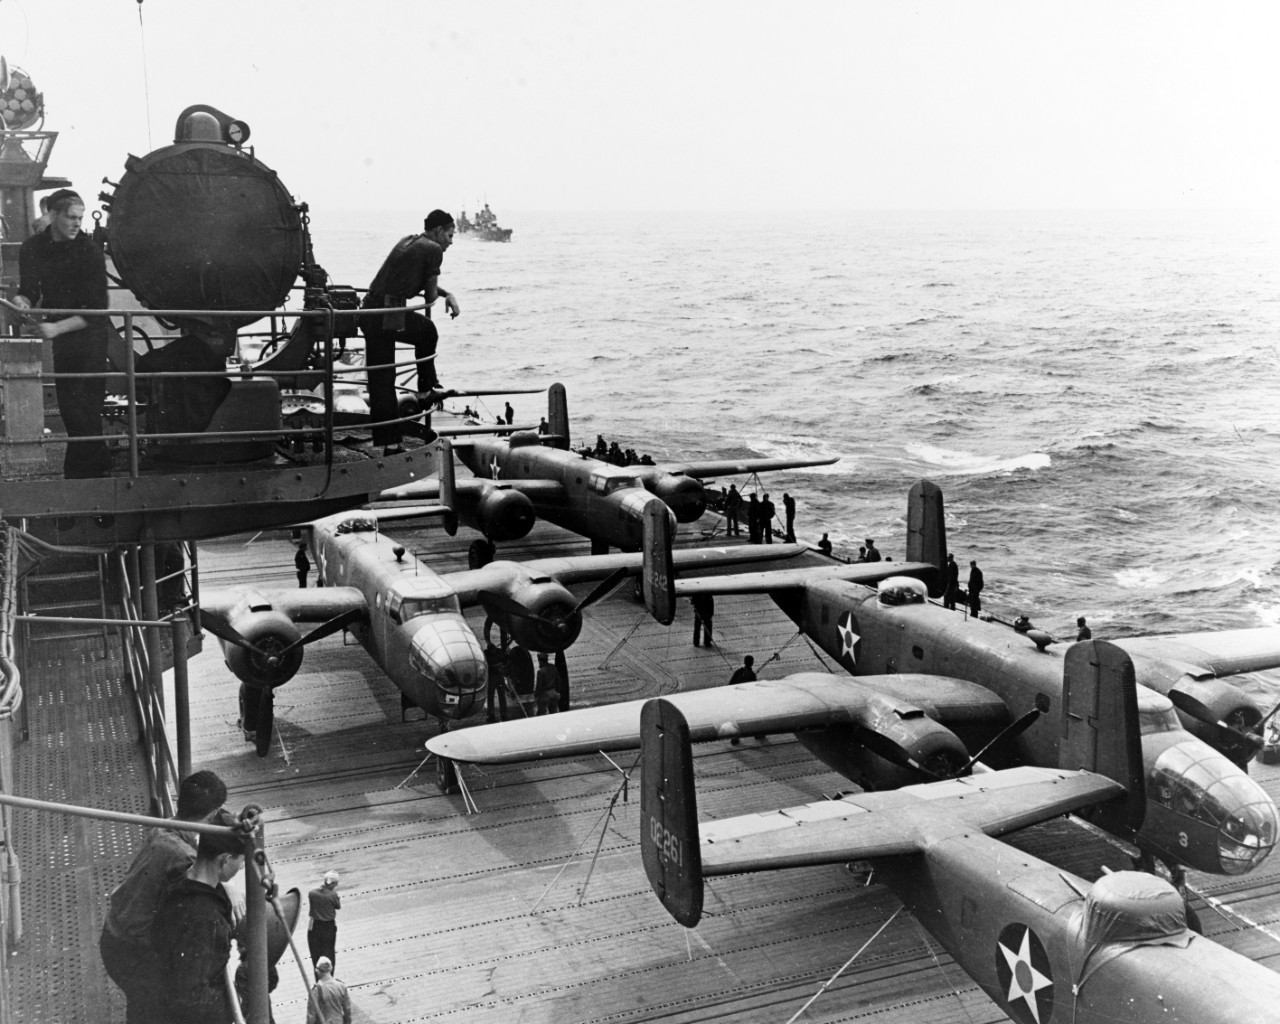 Doolittle Raid on Japan, 18 April 1942